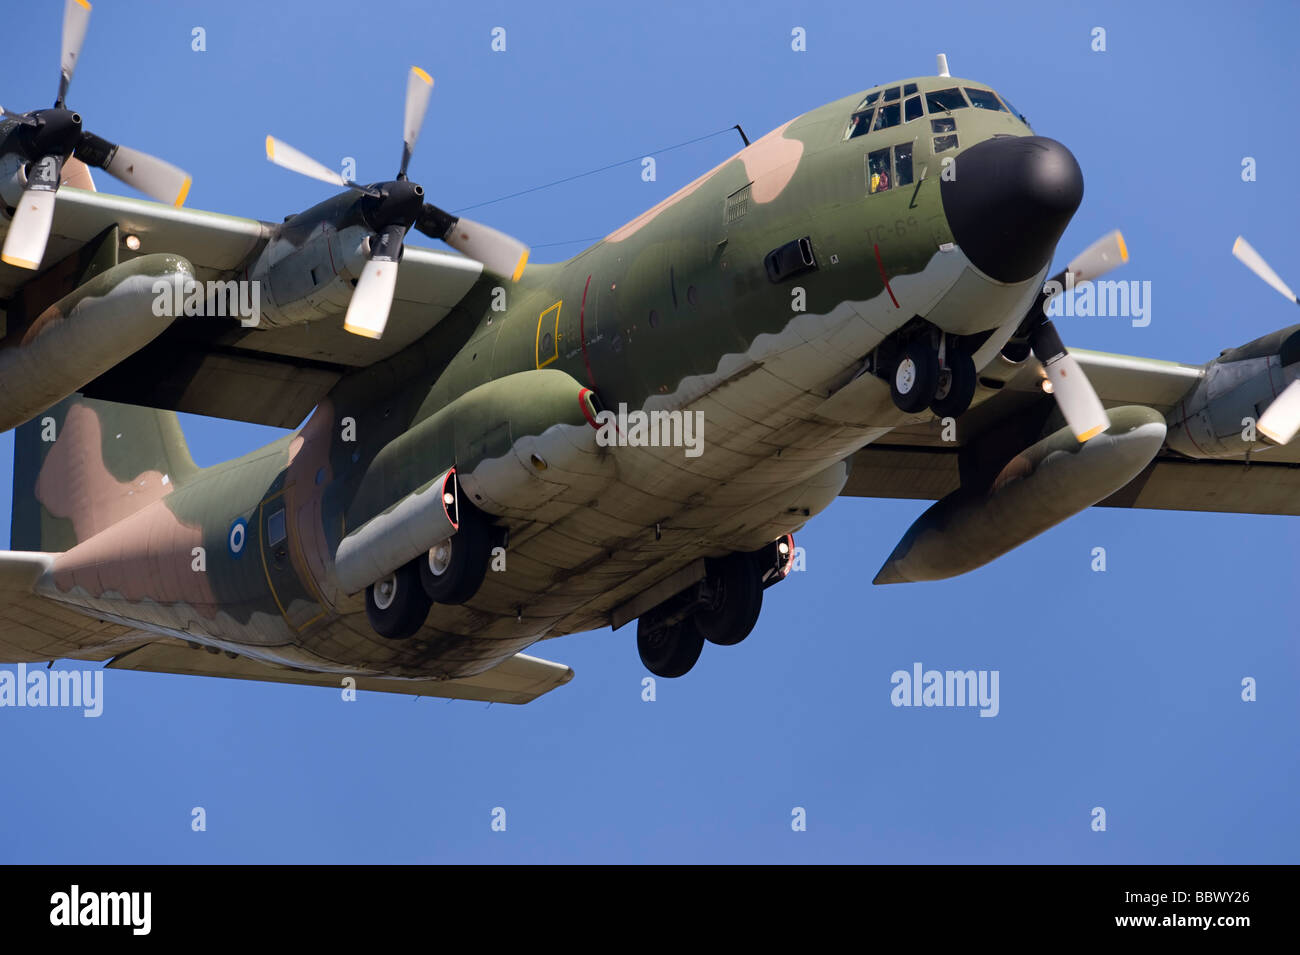 Military Airplane C-130 Hercules Stock Photo